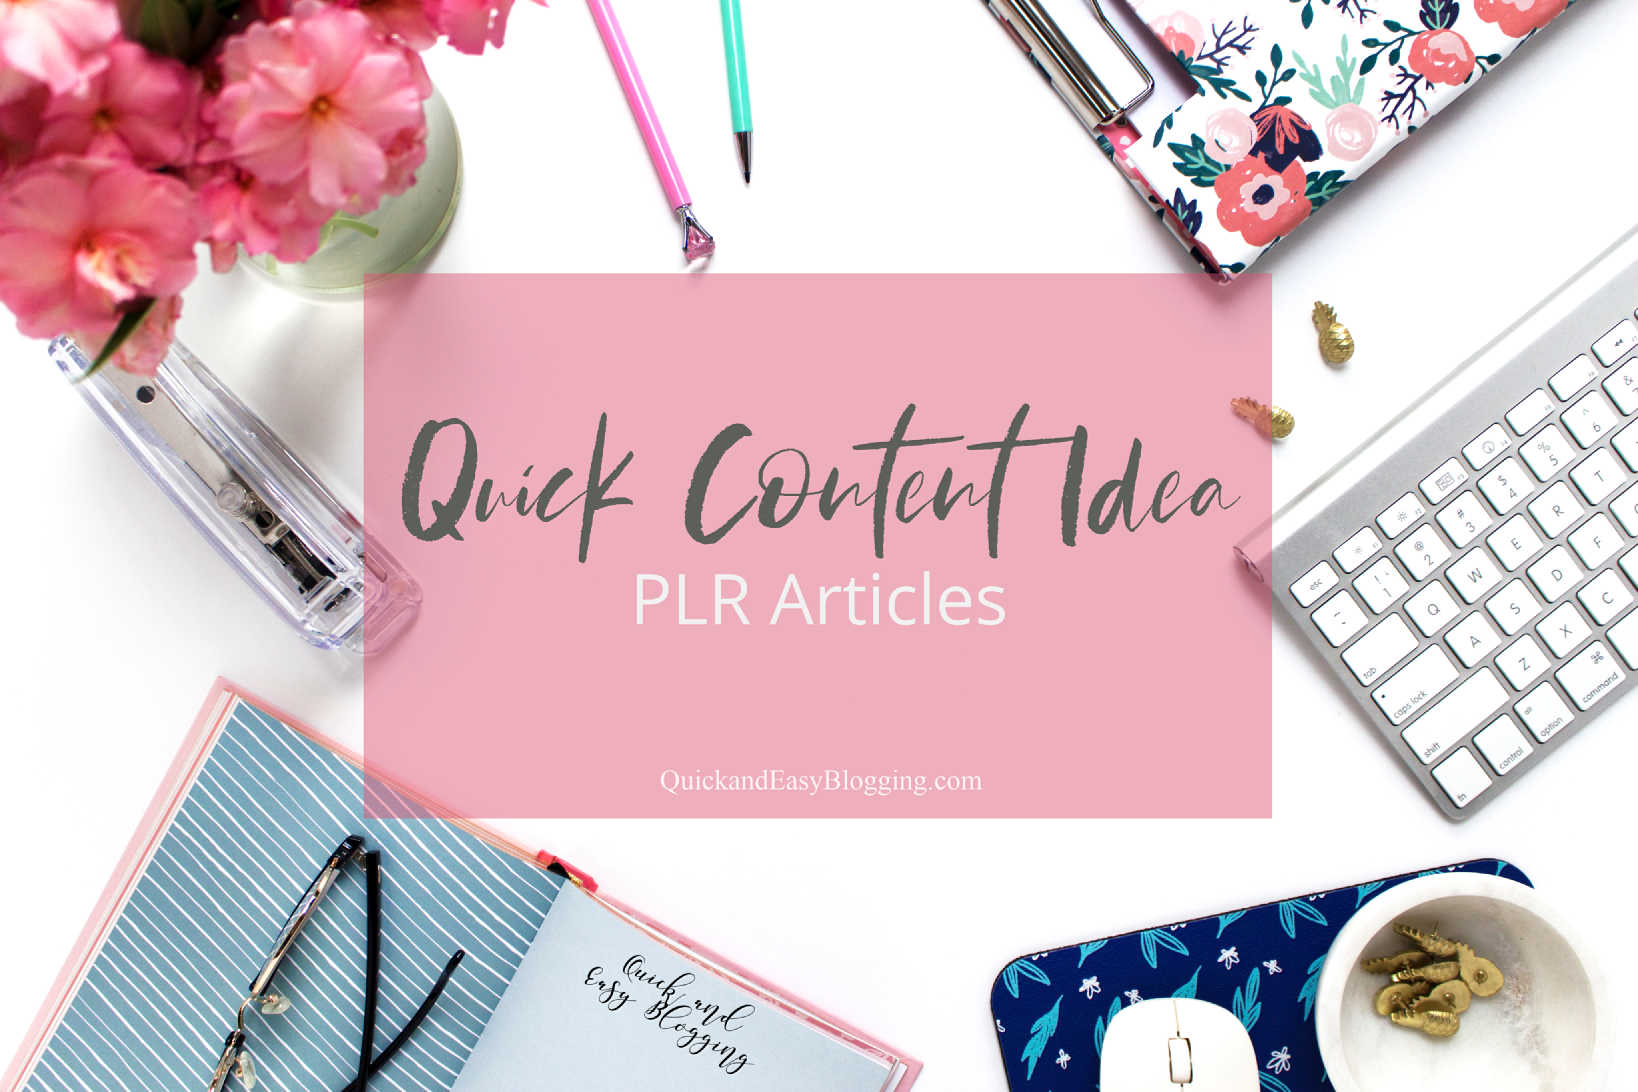 Quick Content Idea - PLR Articles